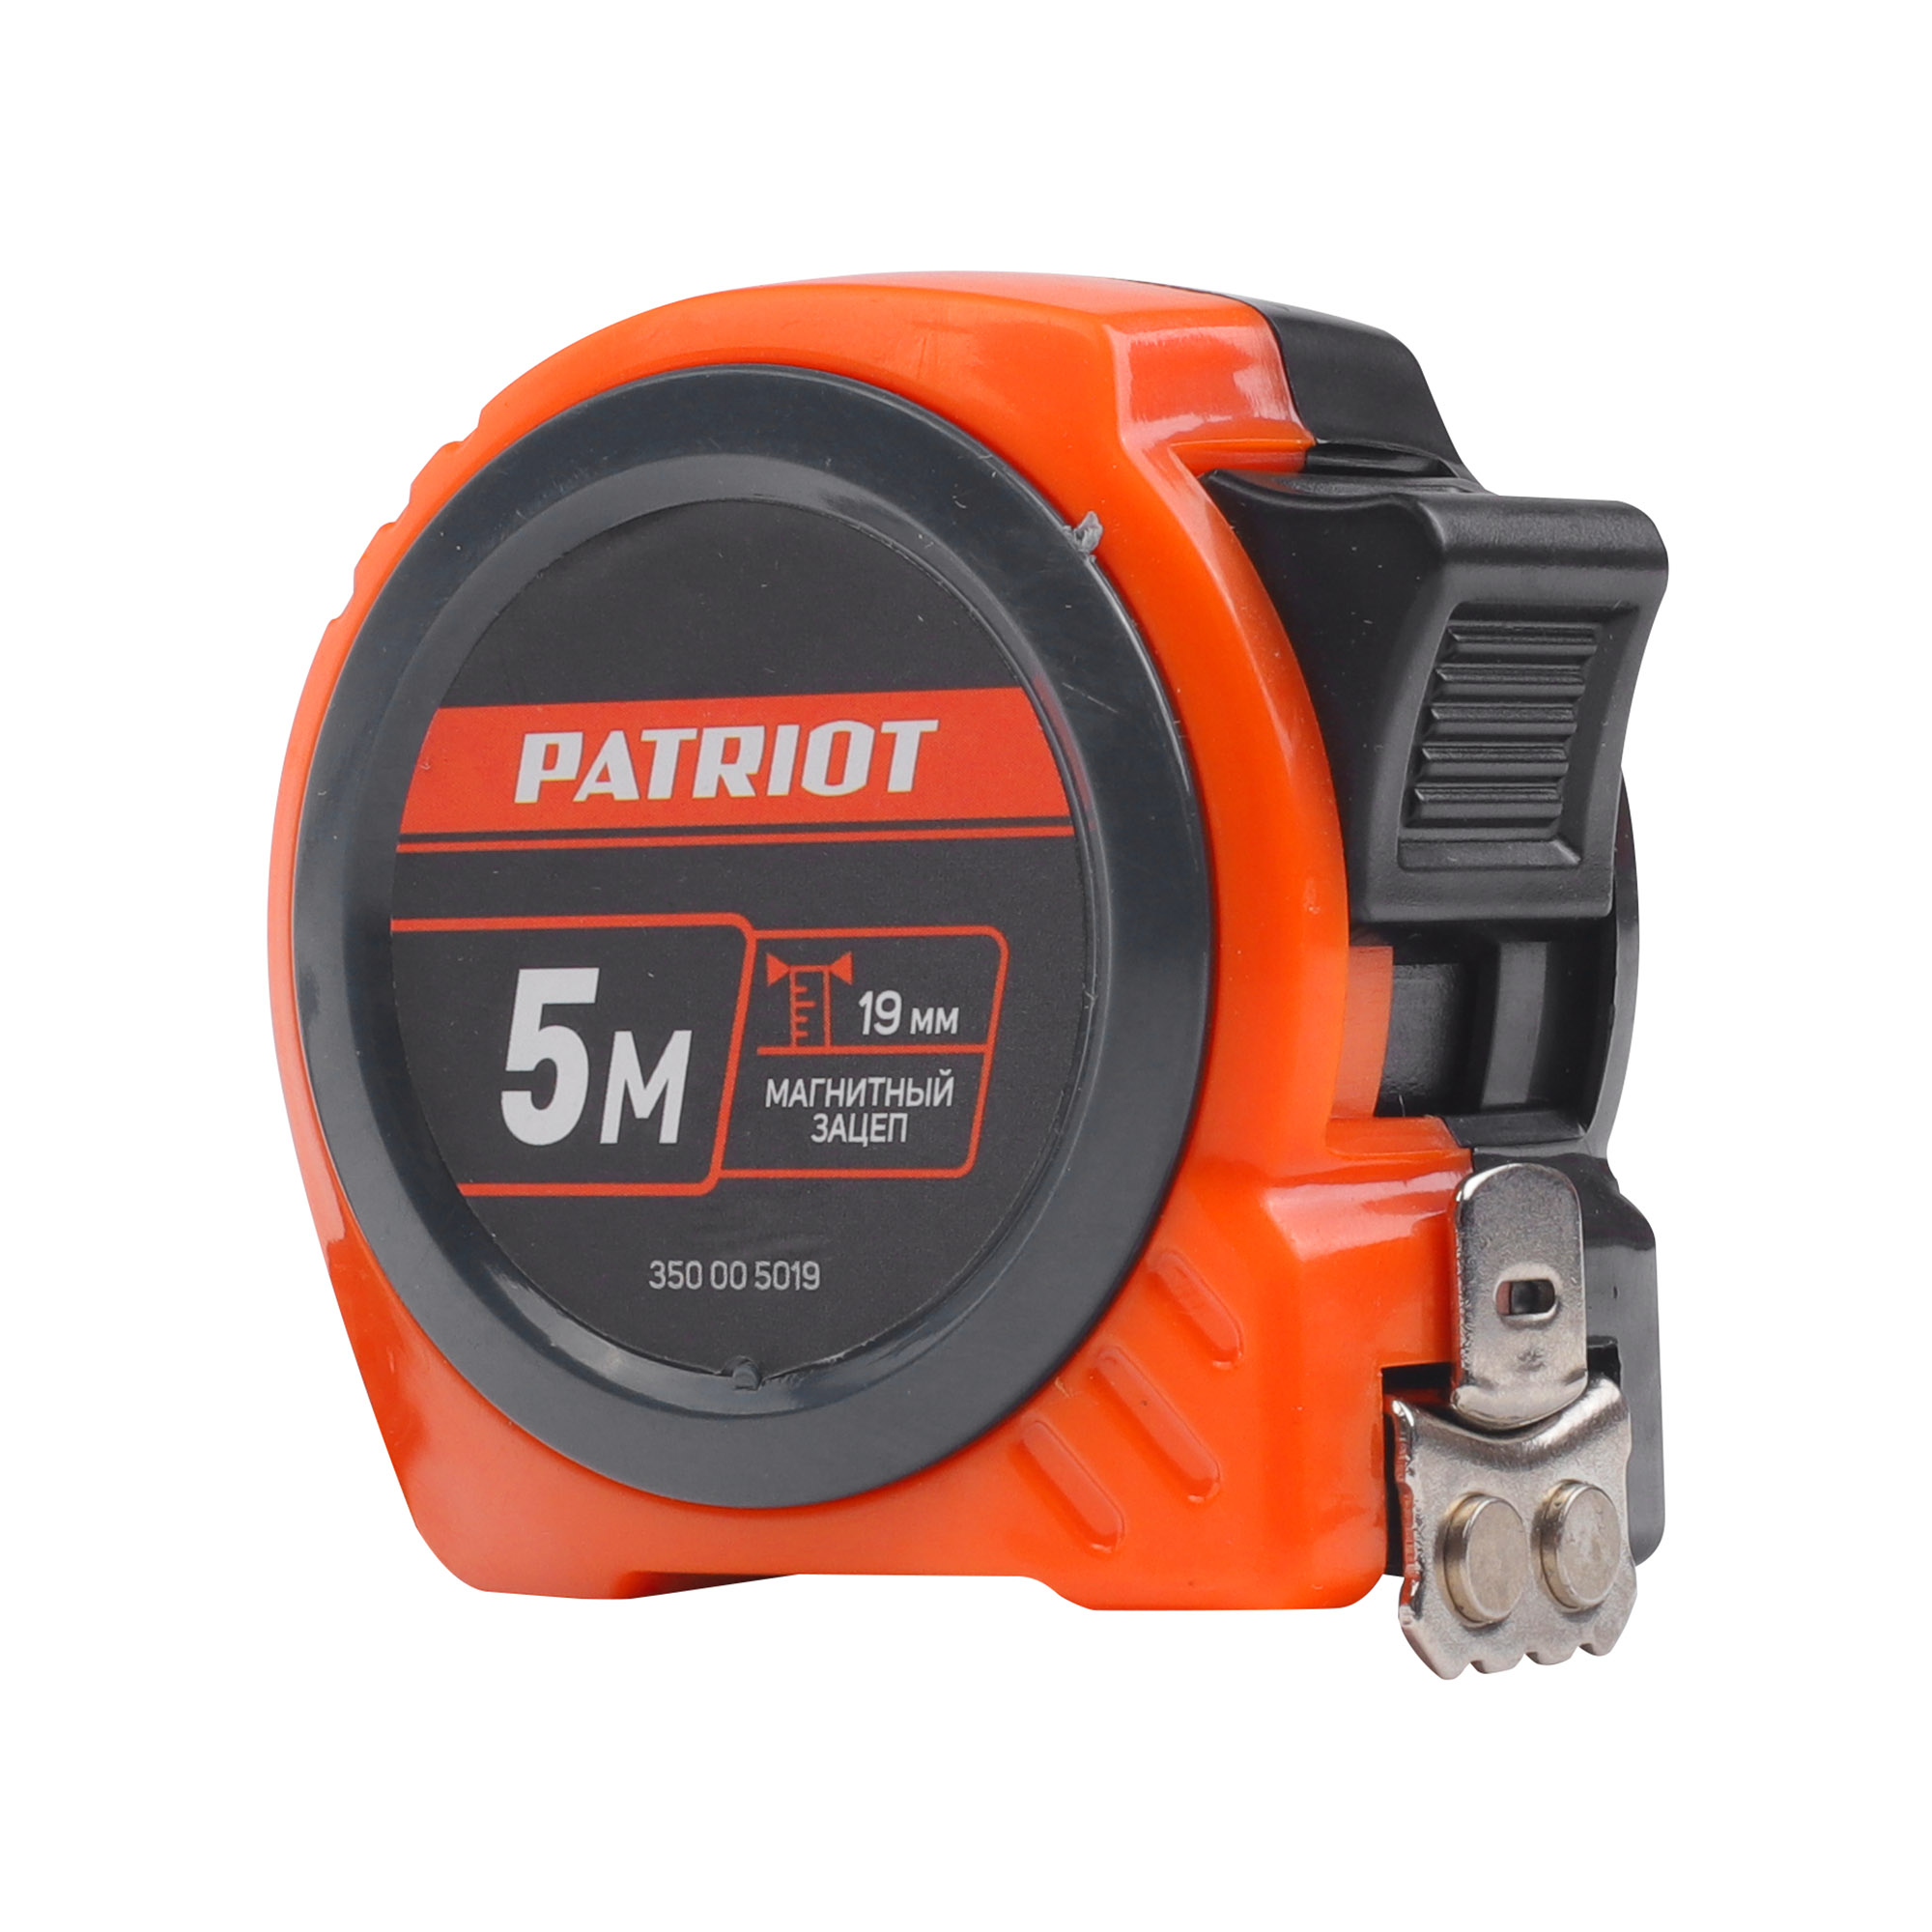 Рулетка измерительная PATRIOT MTP-5-19 рулетка измерительная patriot mtp 5 25 магнитный зацеп длина 5м